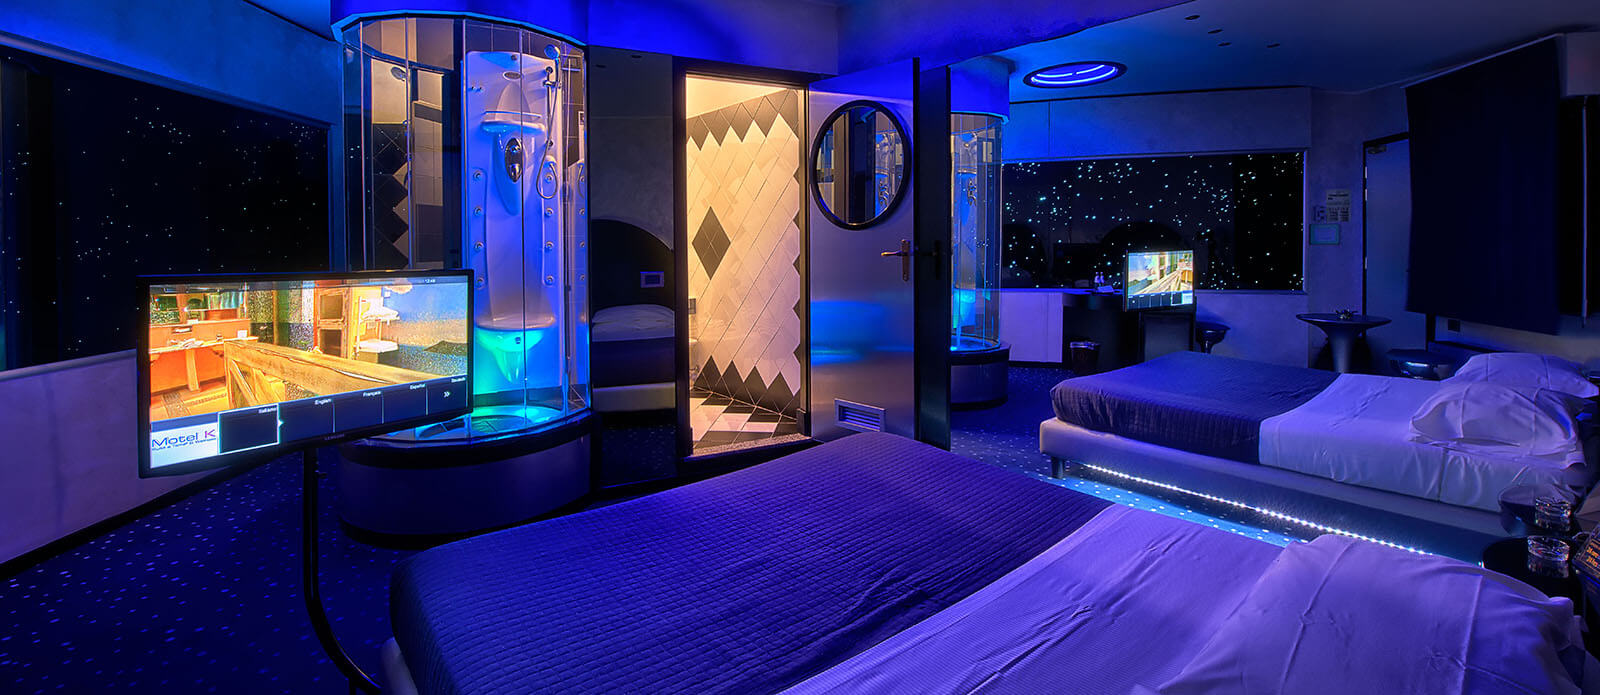 Motel K Junior Suite Planetaria vista su letto matrimoniale con doccia idromassaggio a vista davanti al letto camera a tema fantascientifico